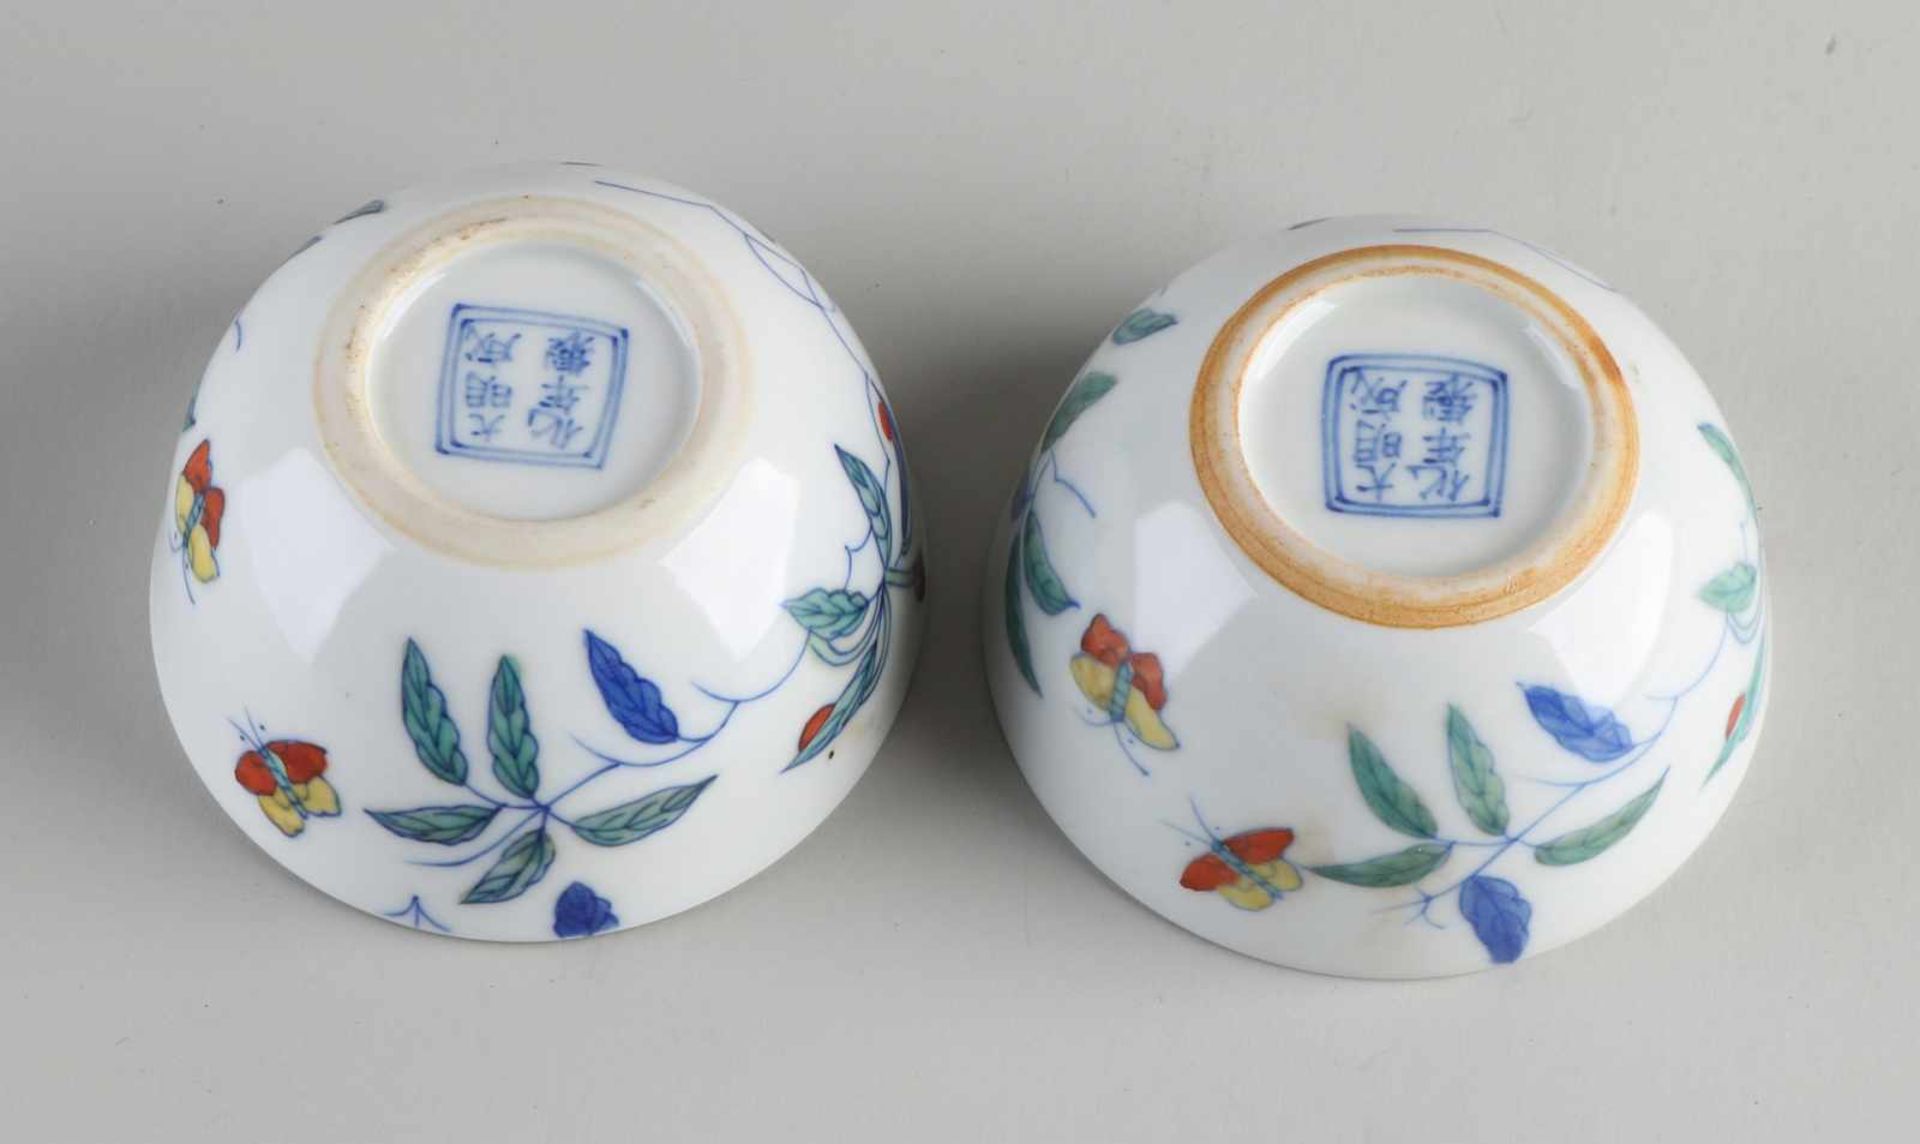 Zwei chinesische Porzellantassen mit Blumen- / Schmetterlingsdekoration. Mit unterer Markierung. - Bild 4 aus 4